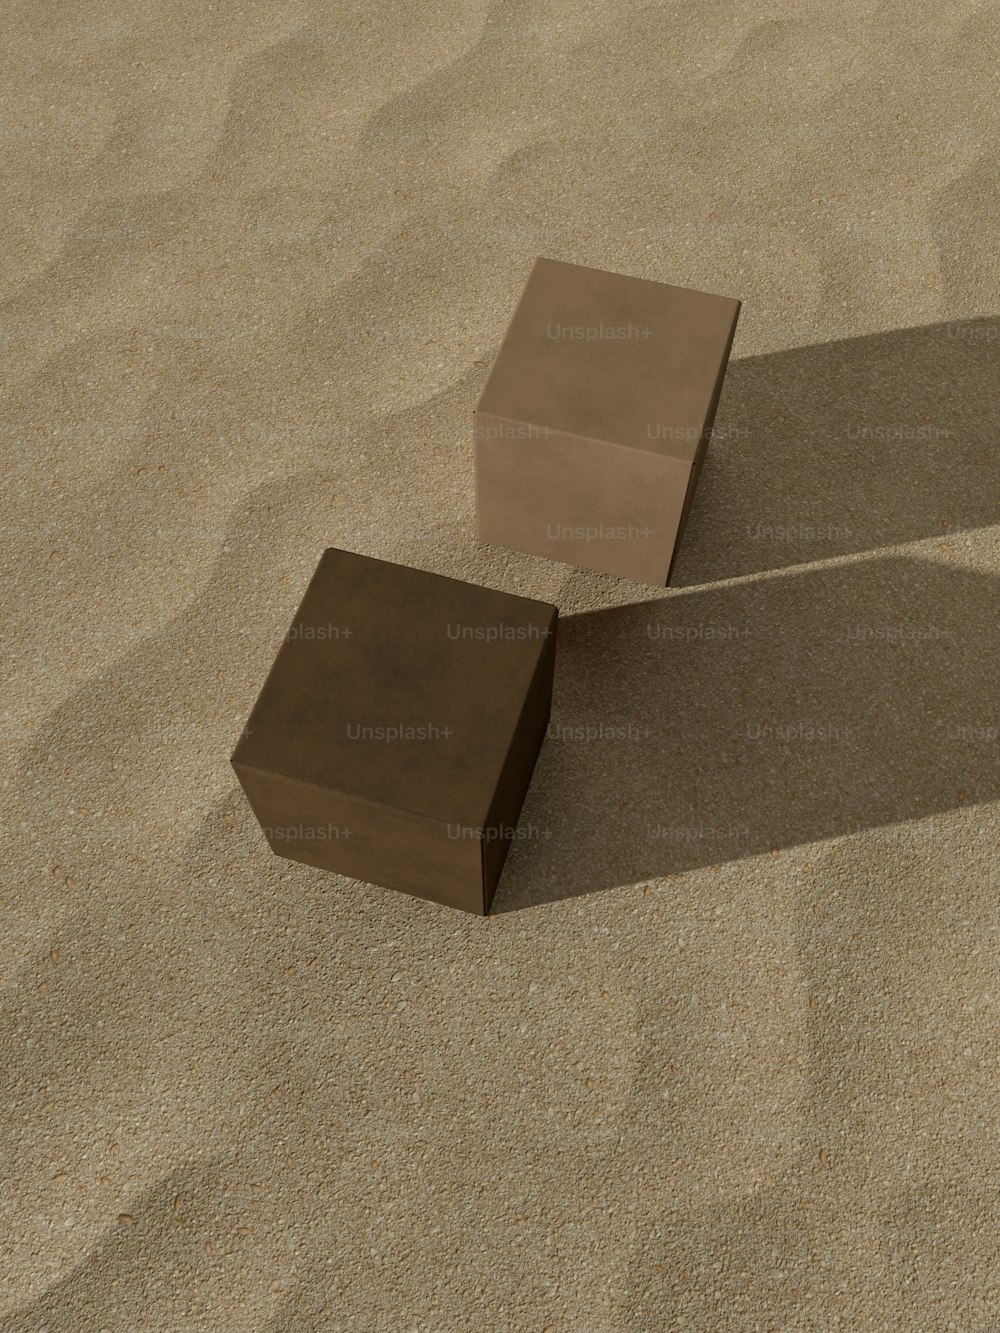 Ein paar Blocks sitzen auf einem Sandstrand